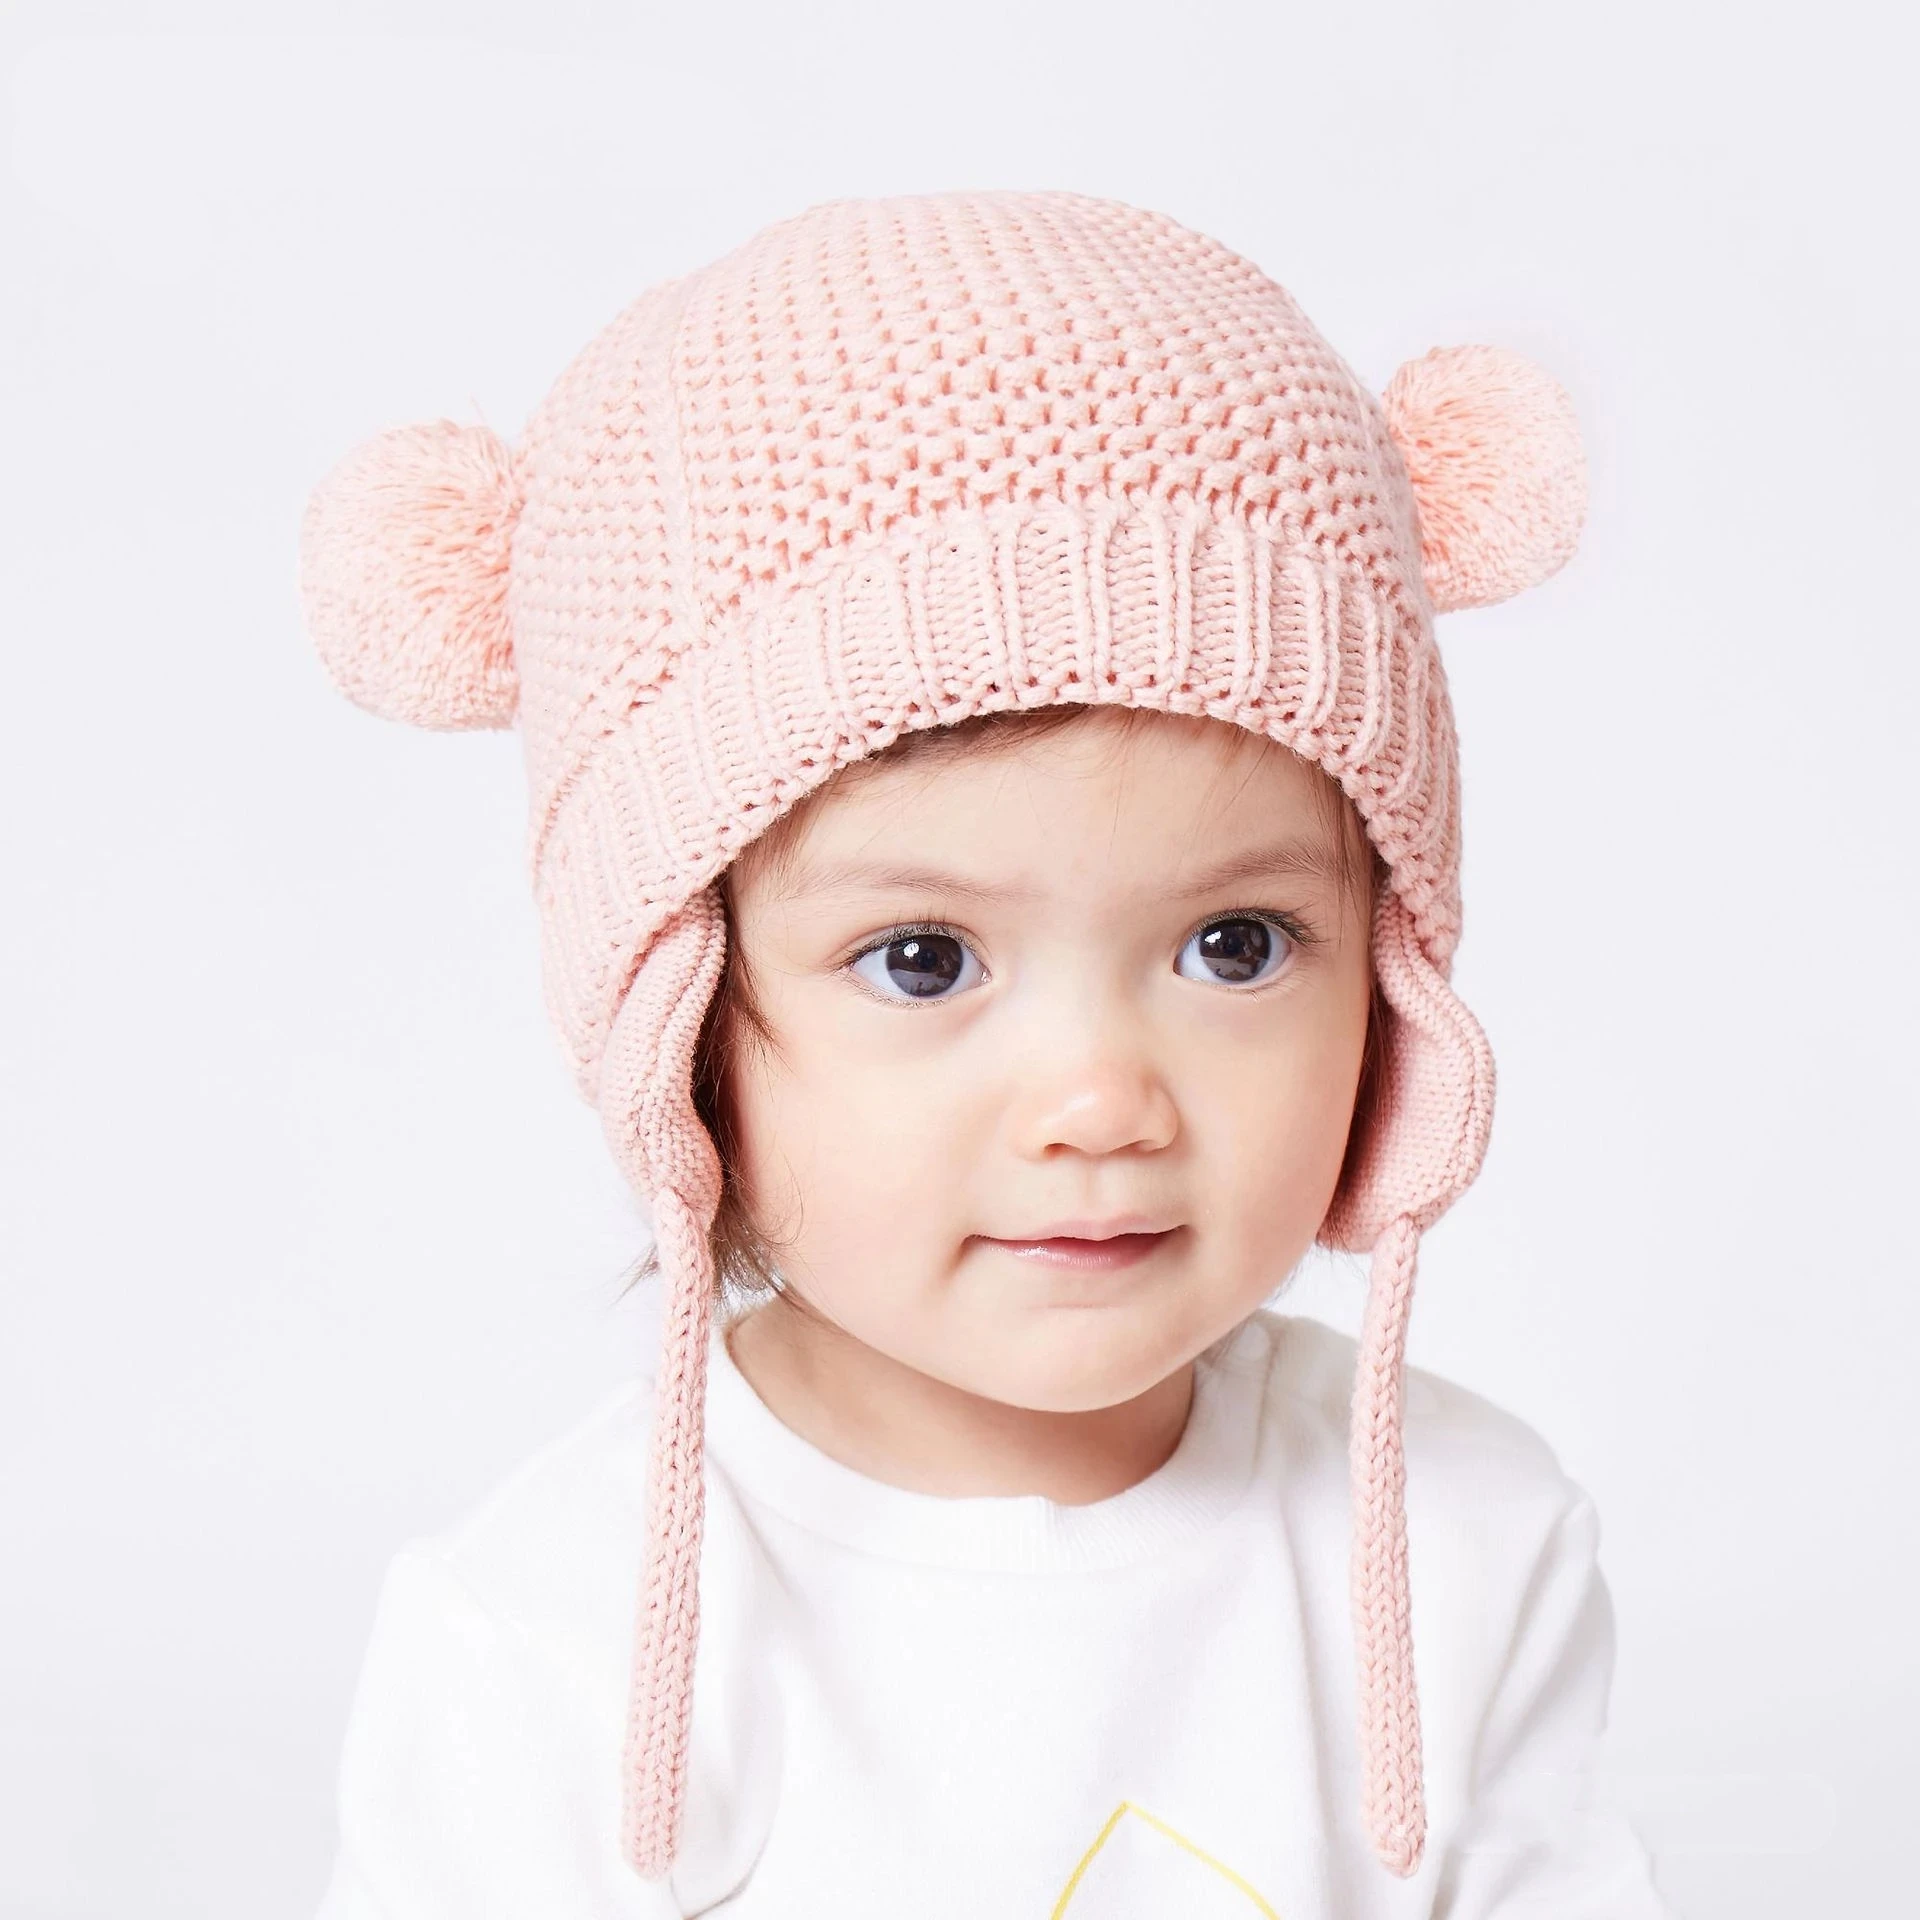 Флисовая шапка для младенцев флисовая зимняя теплая маленьких детей вязаная -